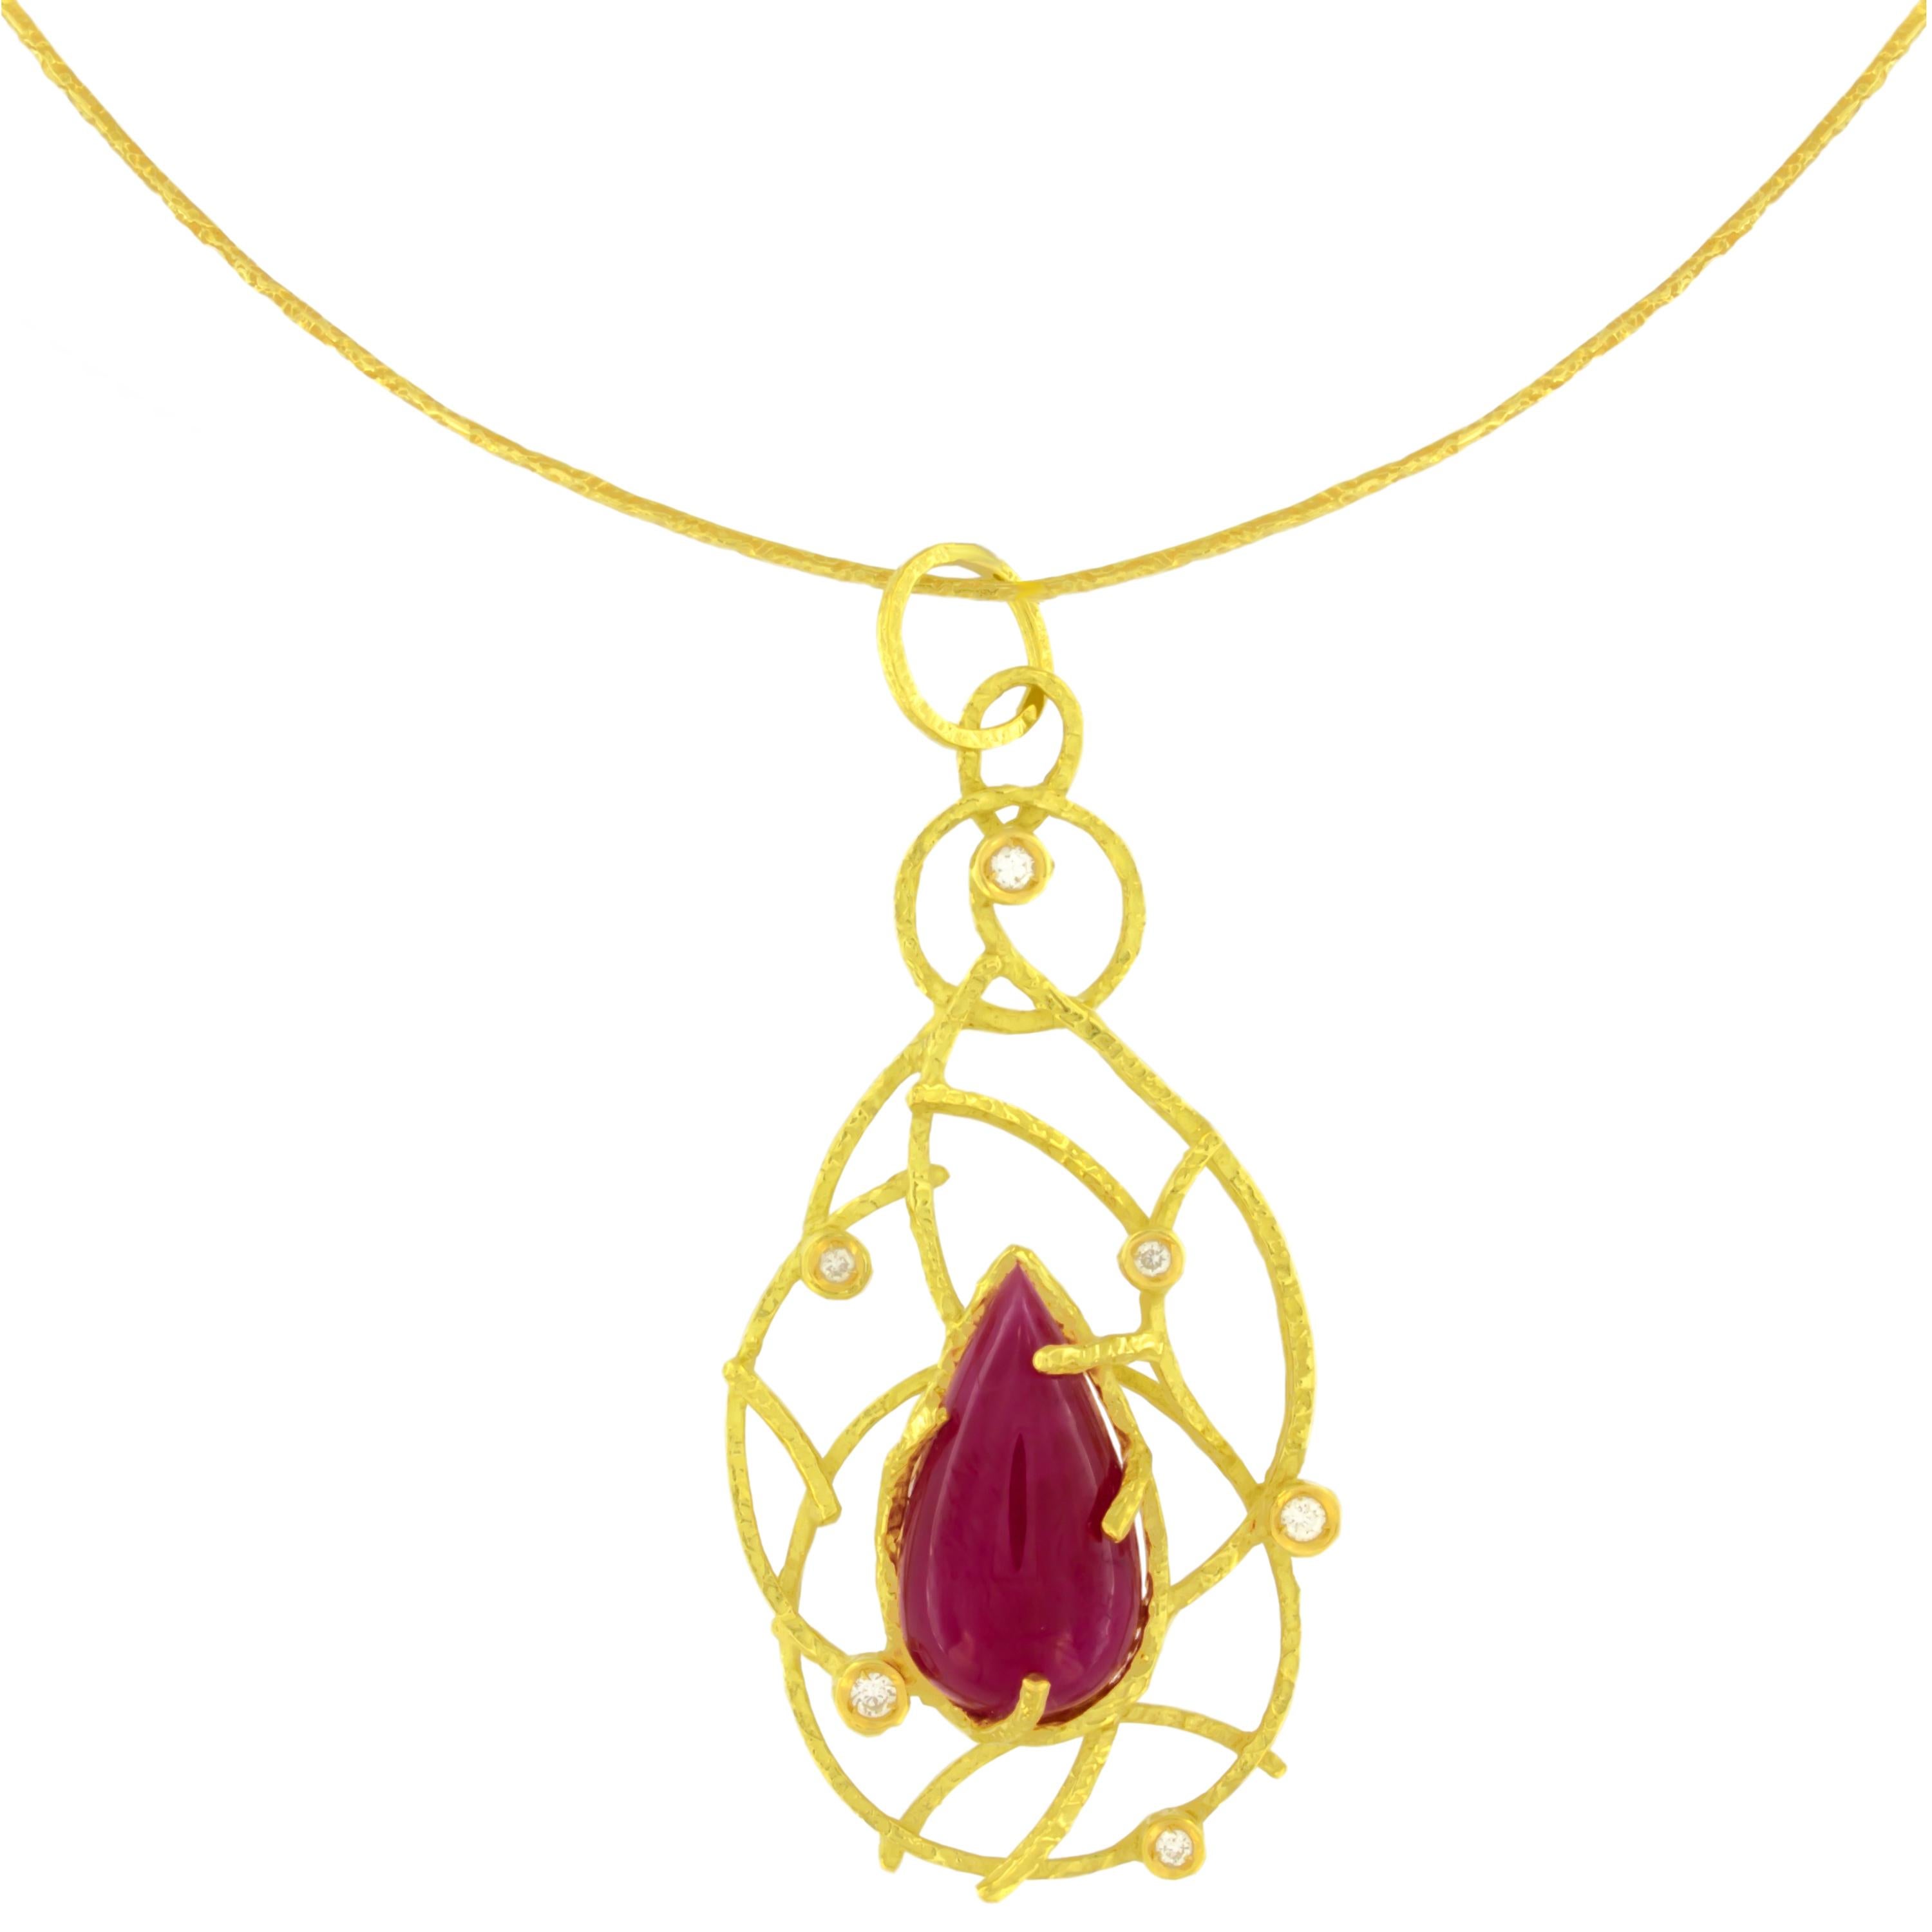 Hübsche Halskette mit Rubin und Diamanten aus 18 Karat Gelbgold, aus der Kollektion 